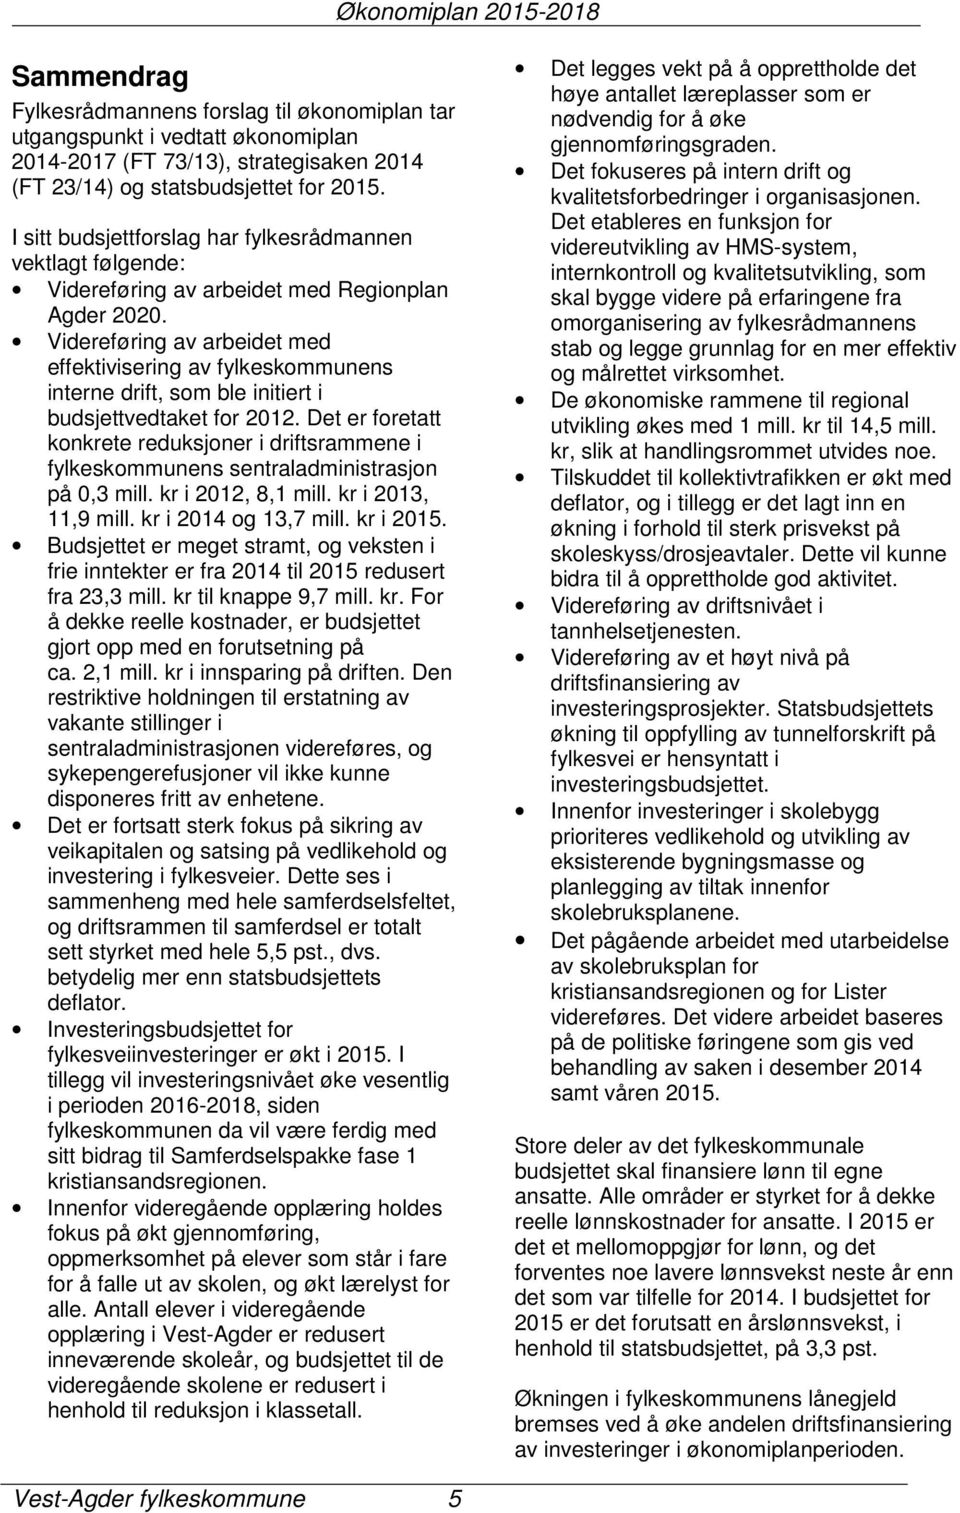 Videreføring av arbeidet med effektivisering av fylkeskommunens interne drift, som ble initiert i budsjettvedtaket for 2012.